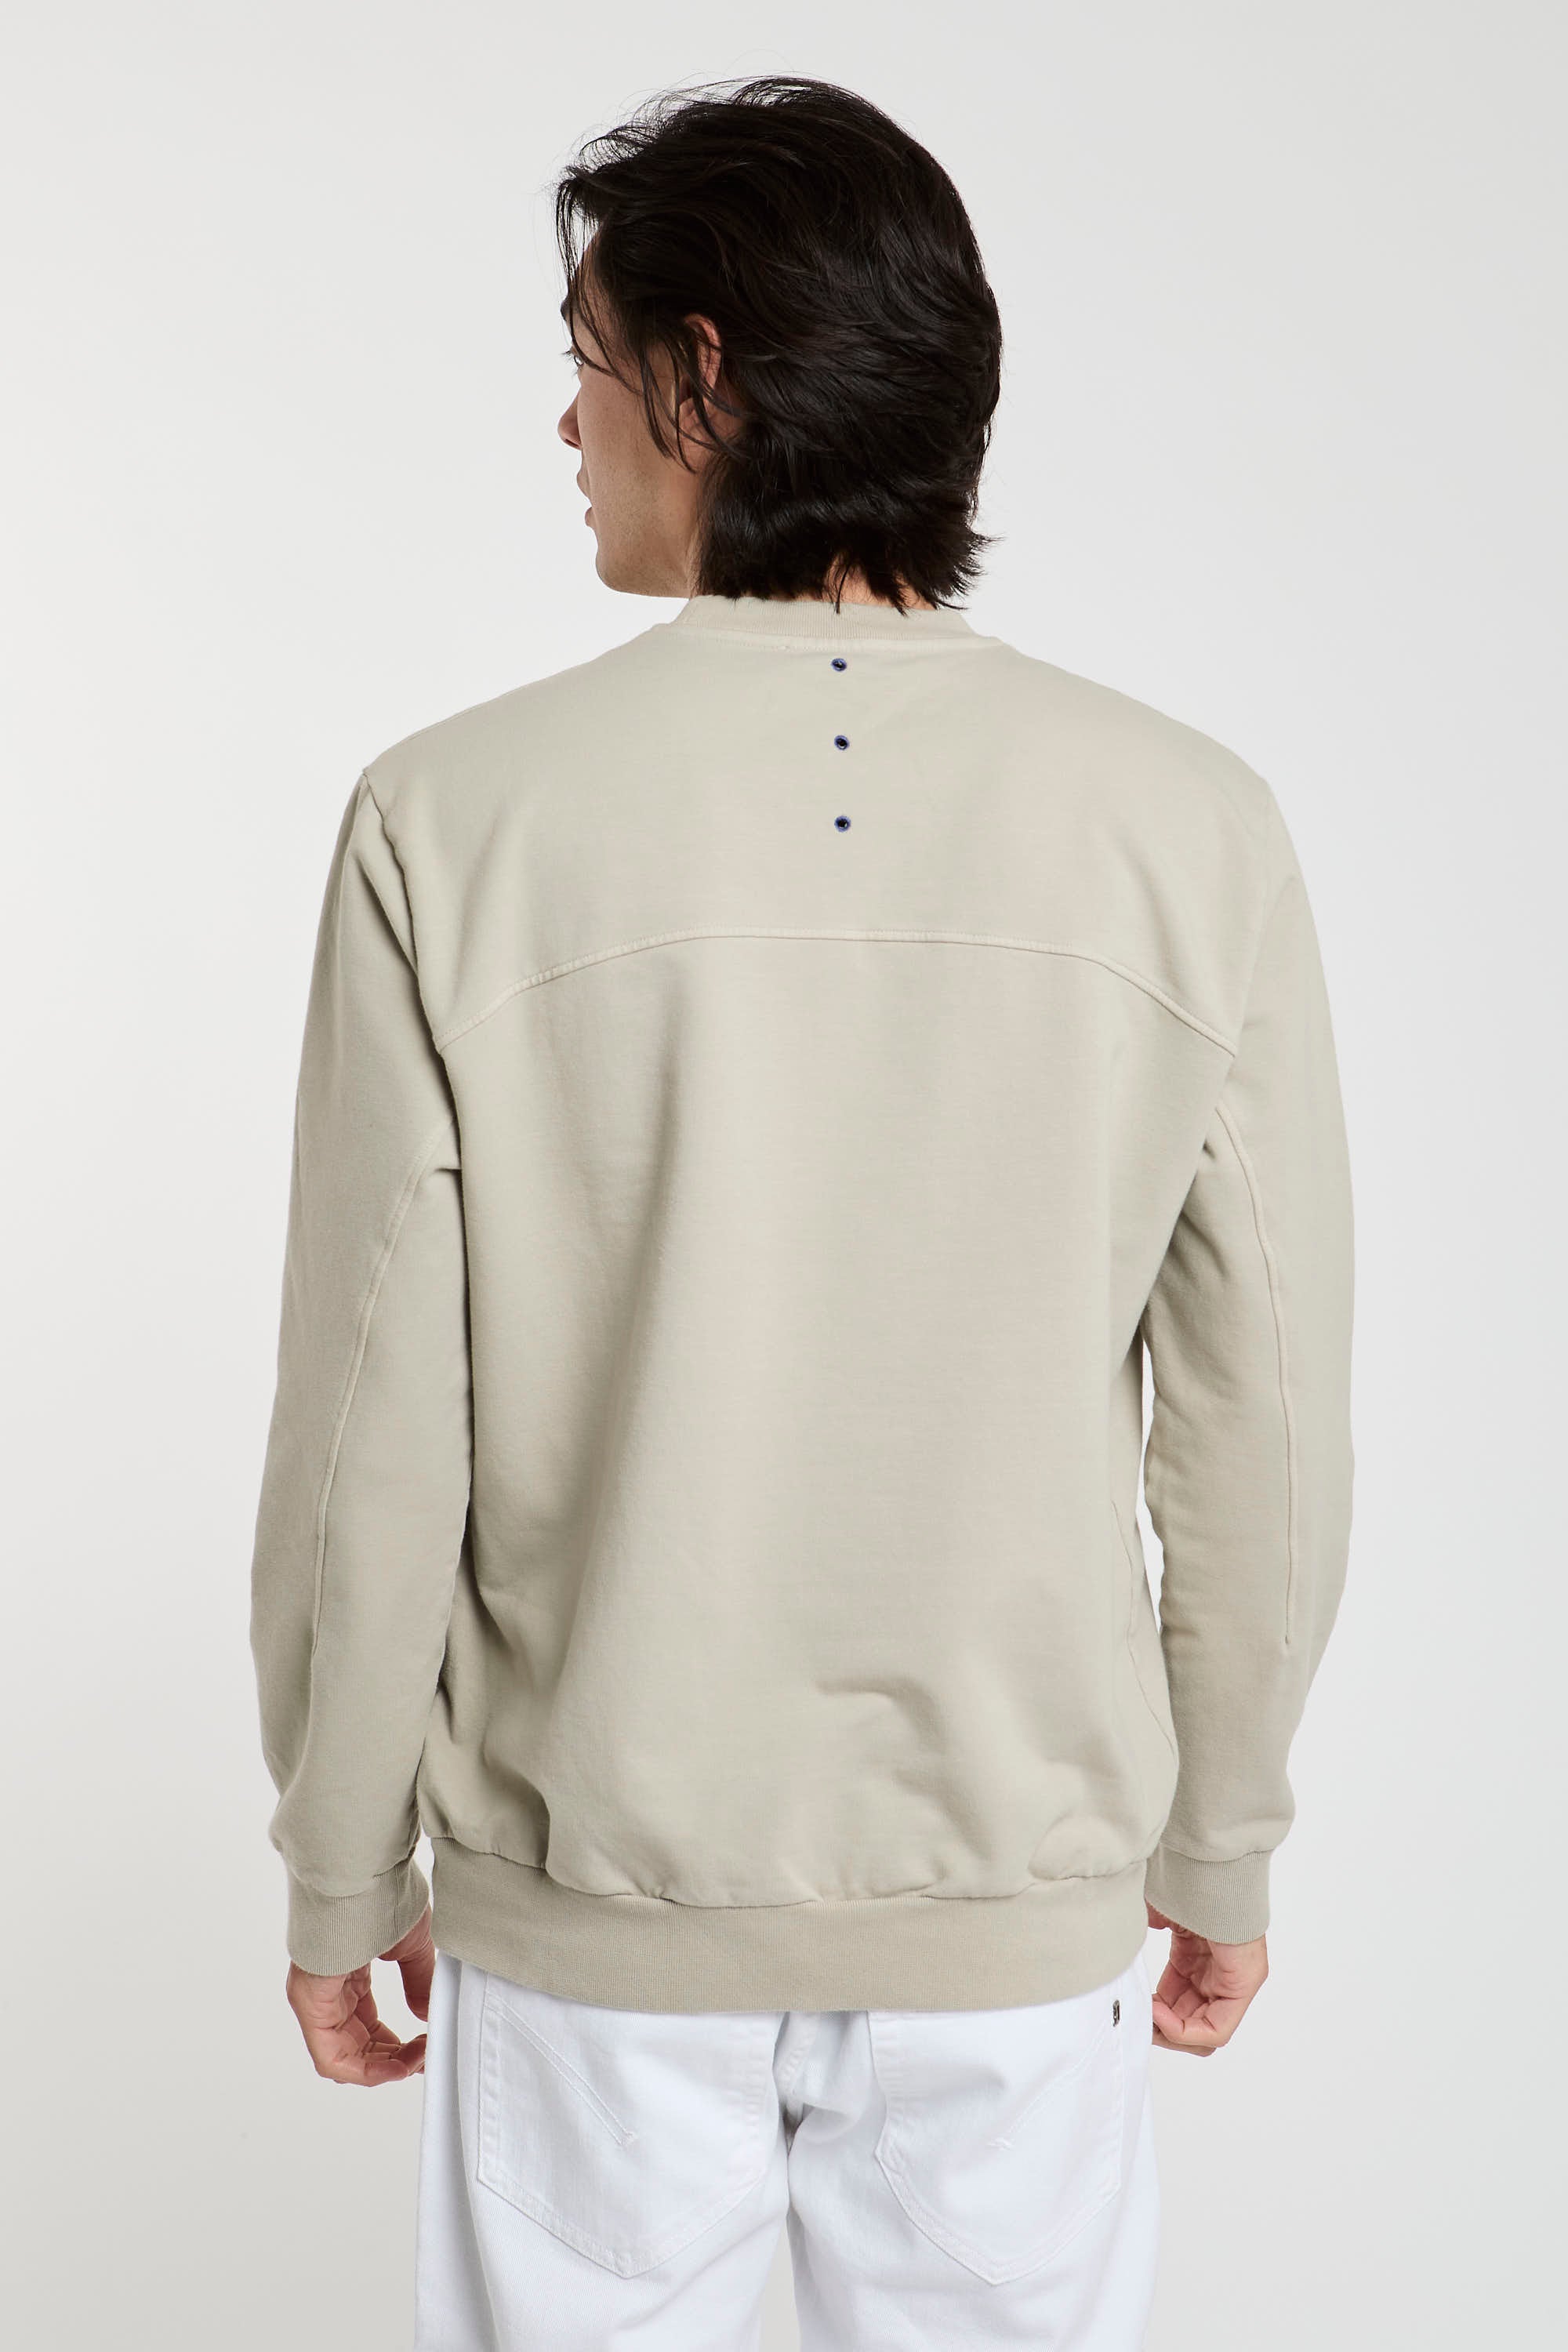 Ausgezeichnete Sweatshirt Baumwolle/Elasthan Sandfarben-5